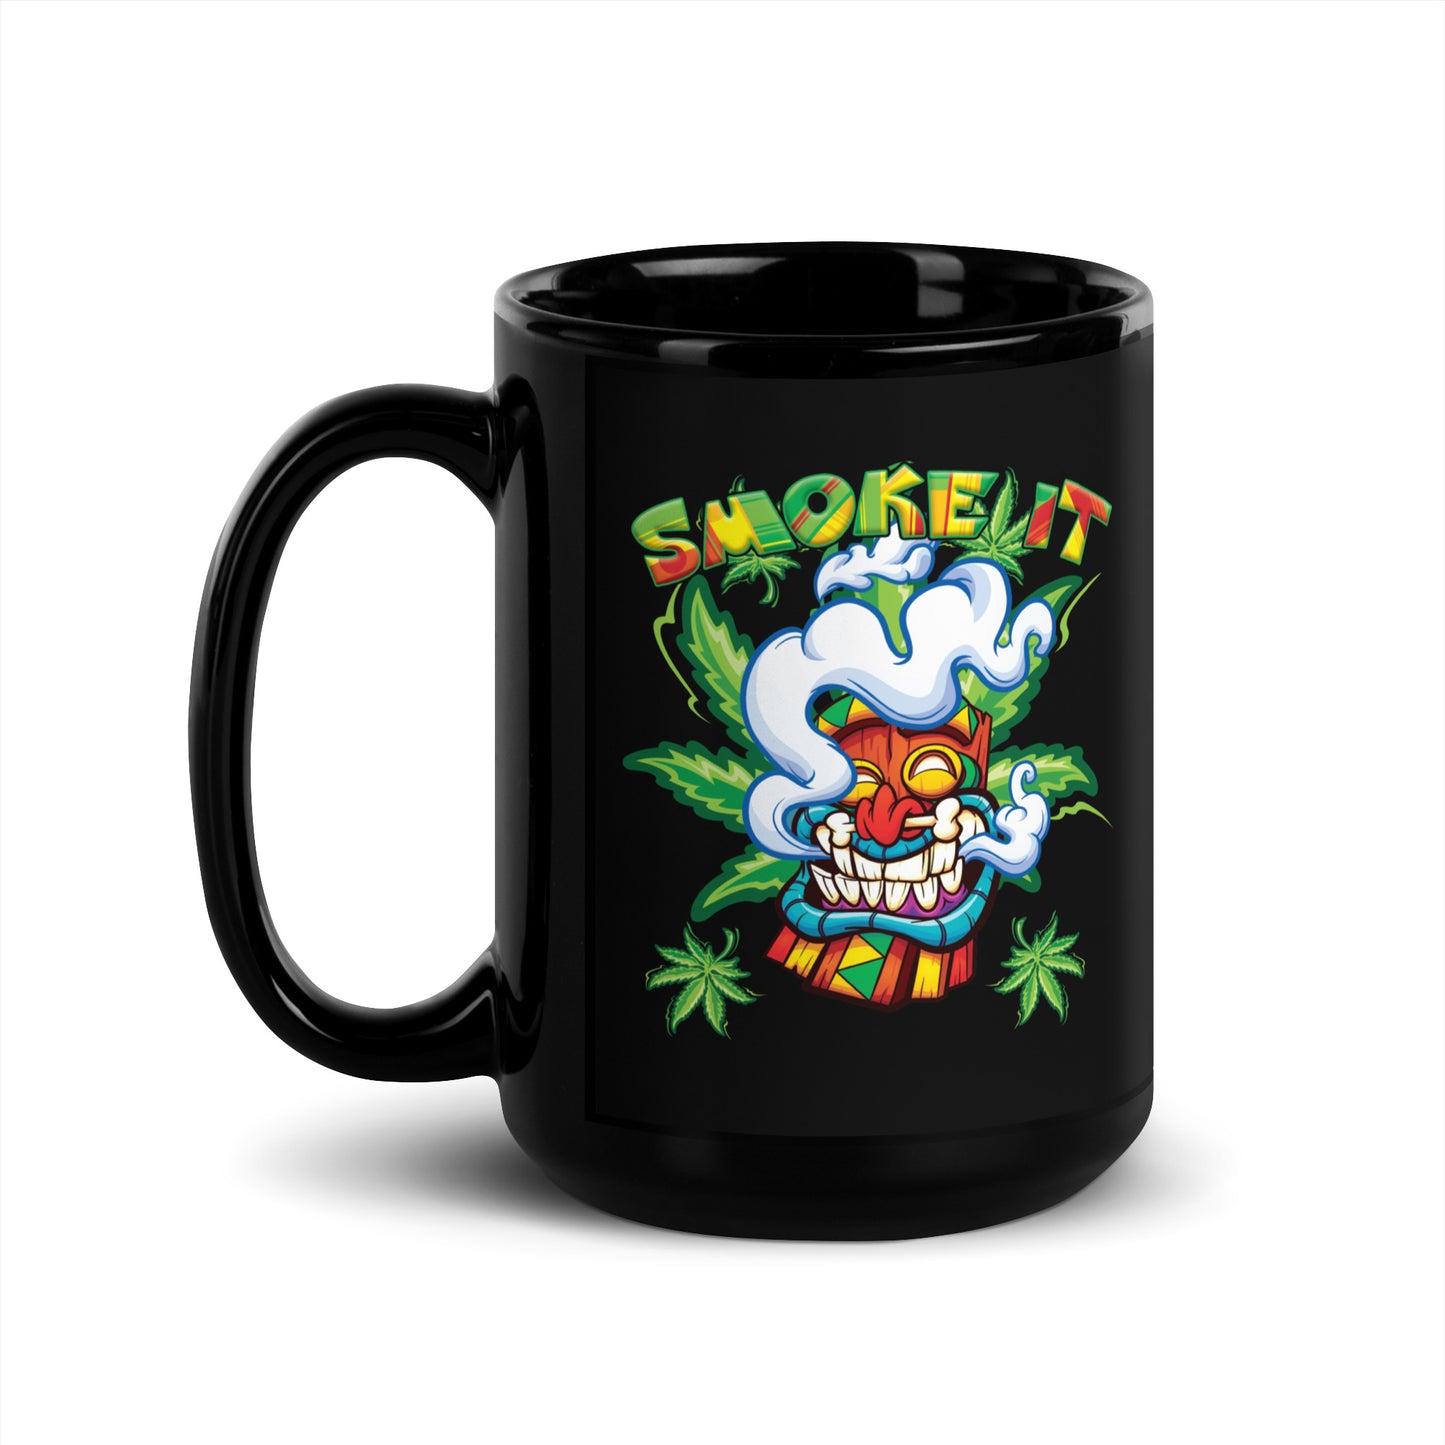 Smoke It Tiki Coffee Mug